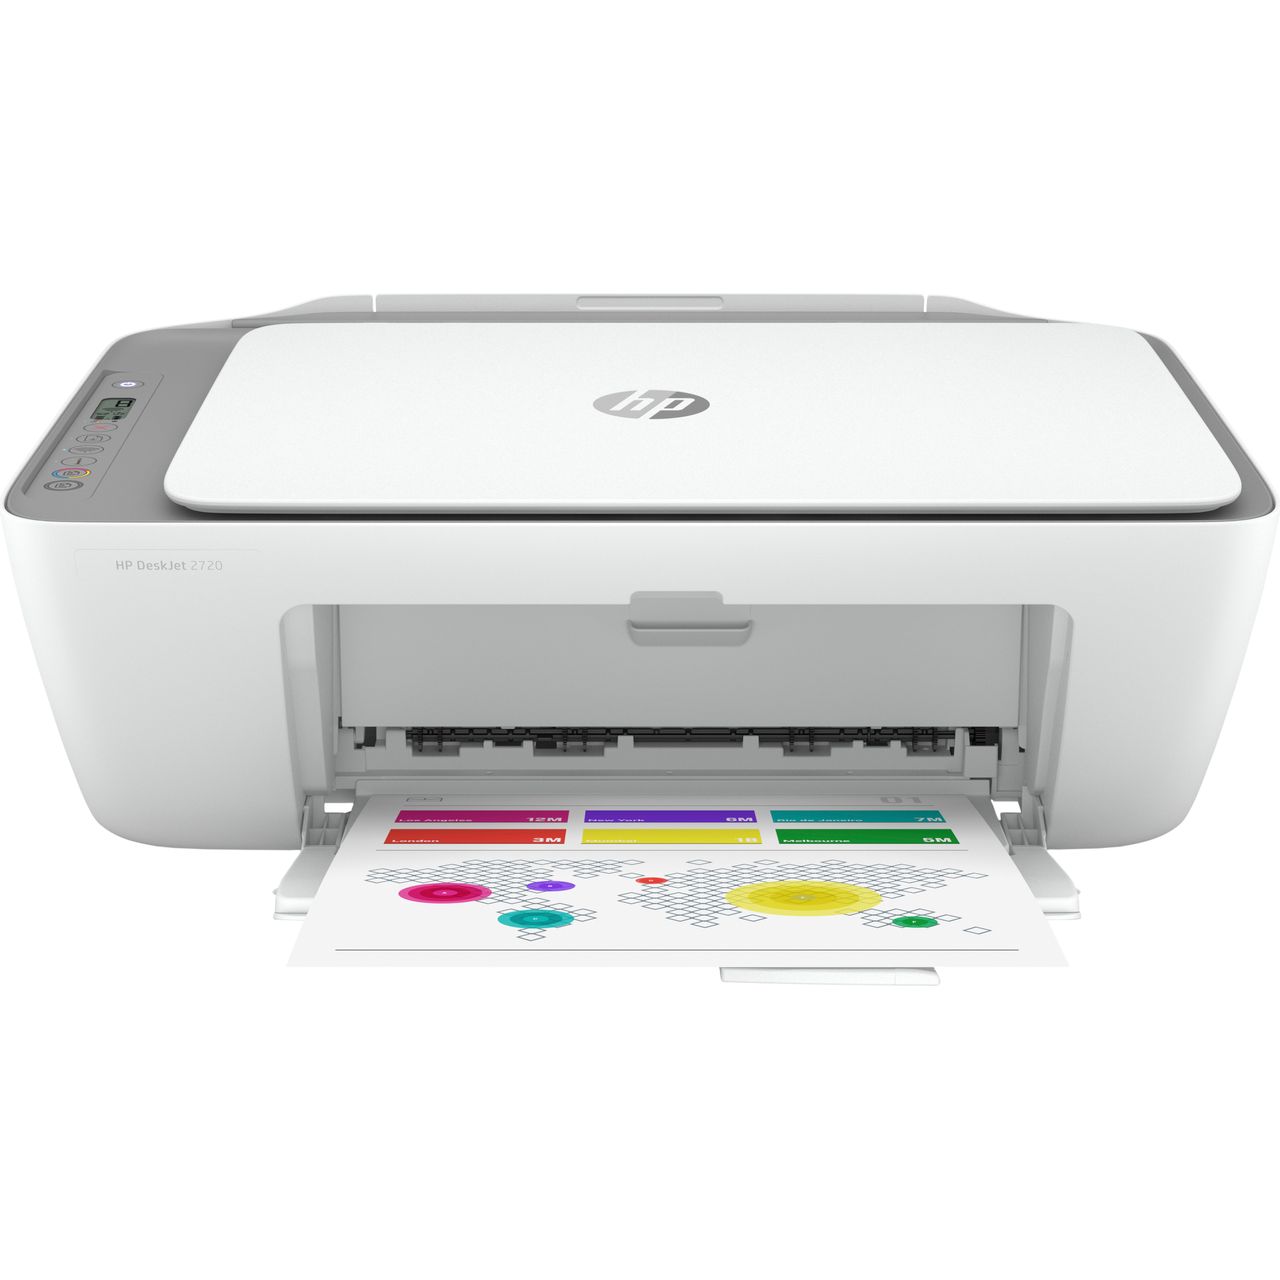 HP Deskjet 2720 Inkjet Printer Review